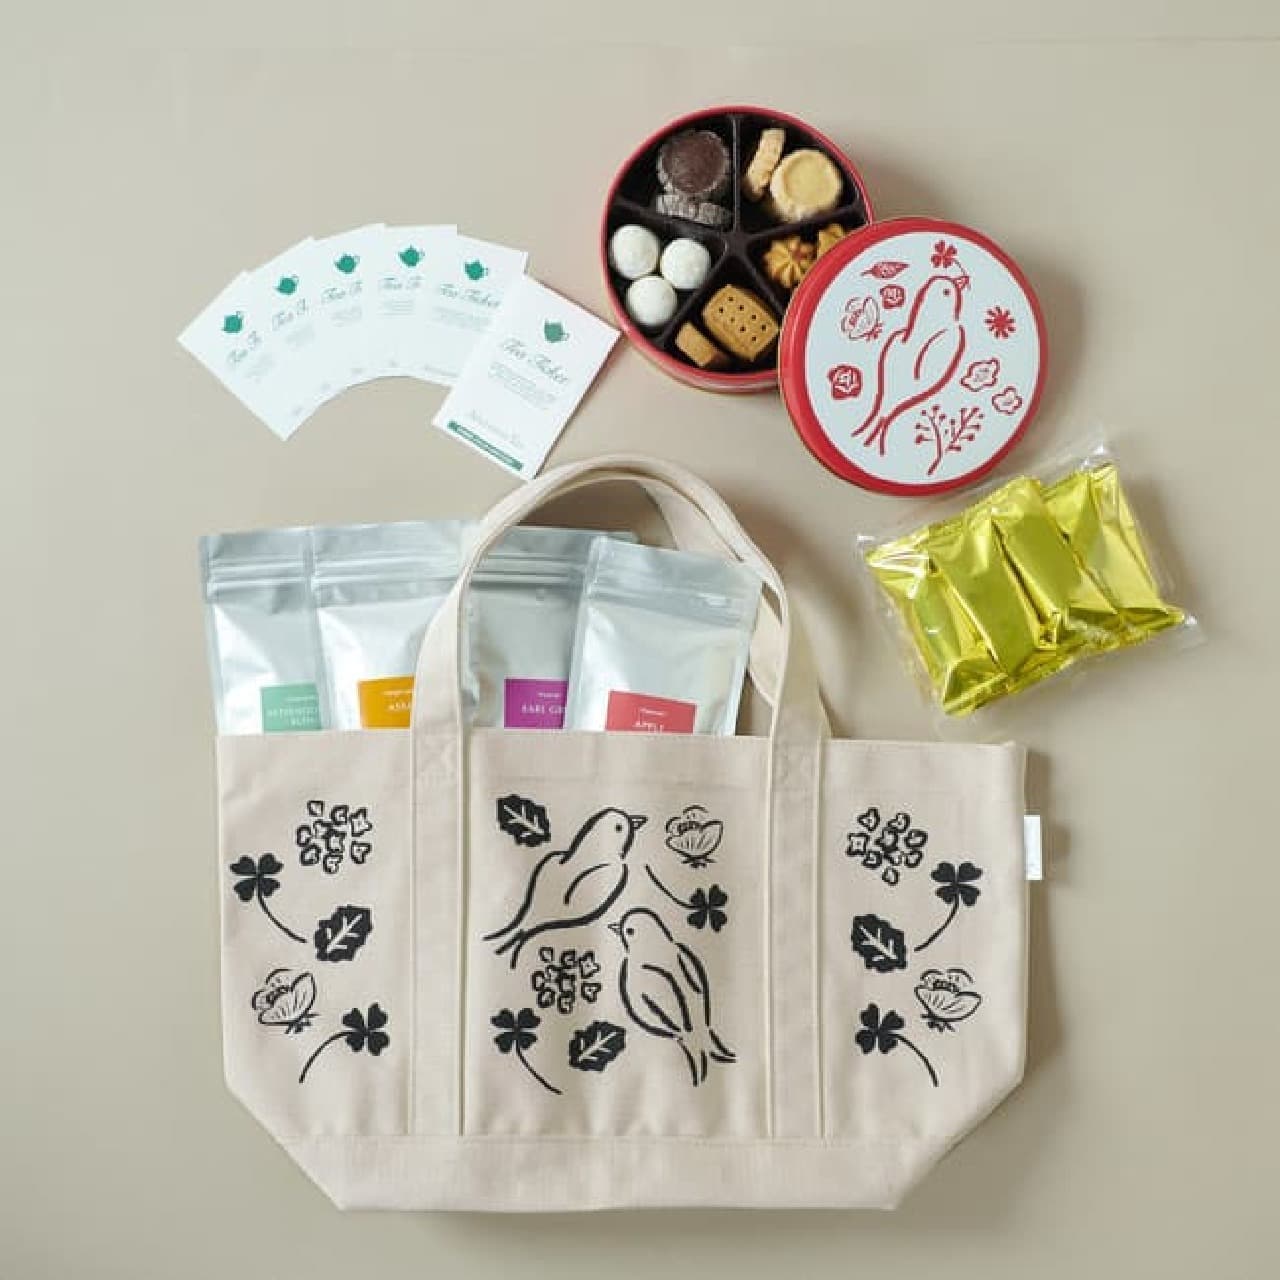  アフタヌーンティー・ティールーム福袋2種 -- 紅茶・焼き菓子を塩川いづみさんイラストトートバッグに詰合せ